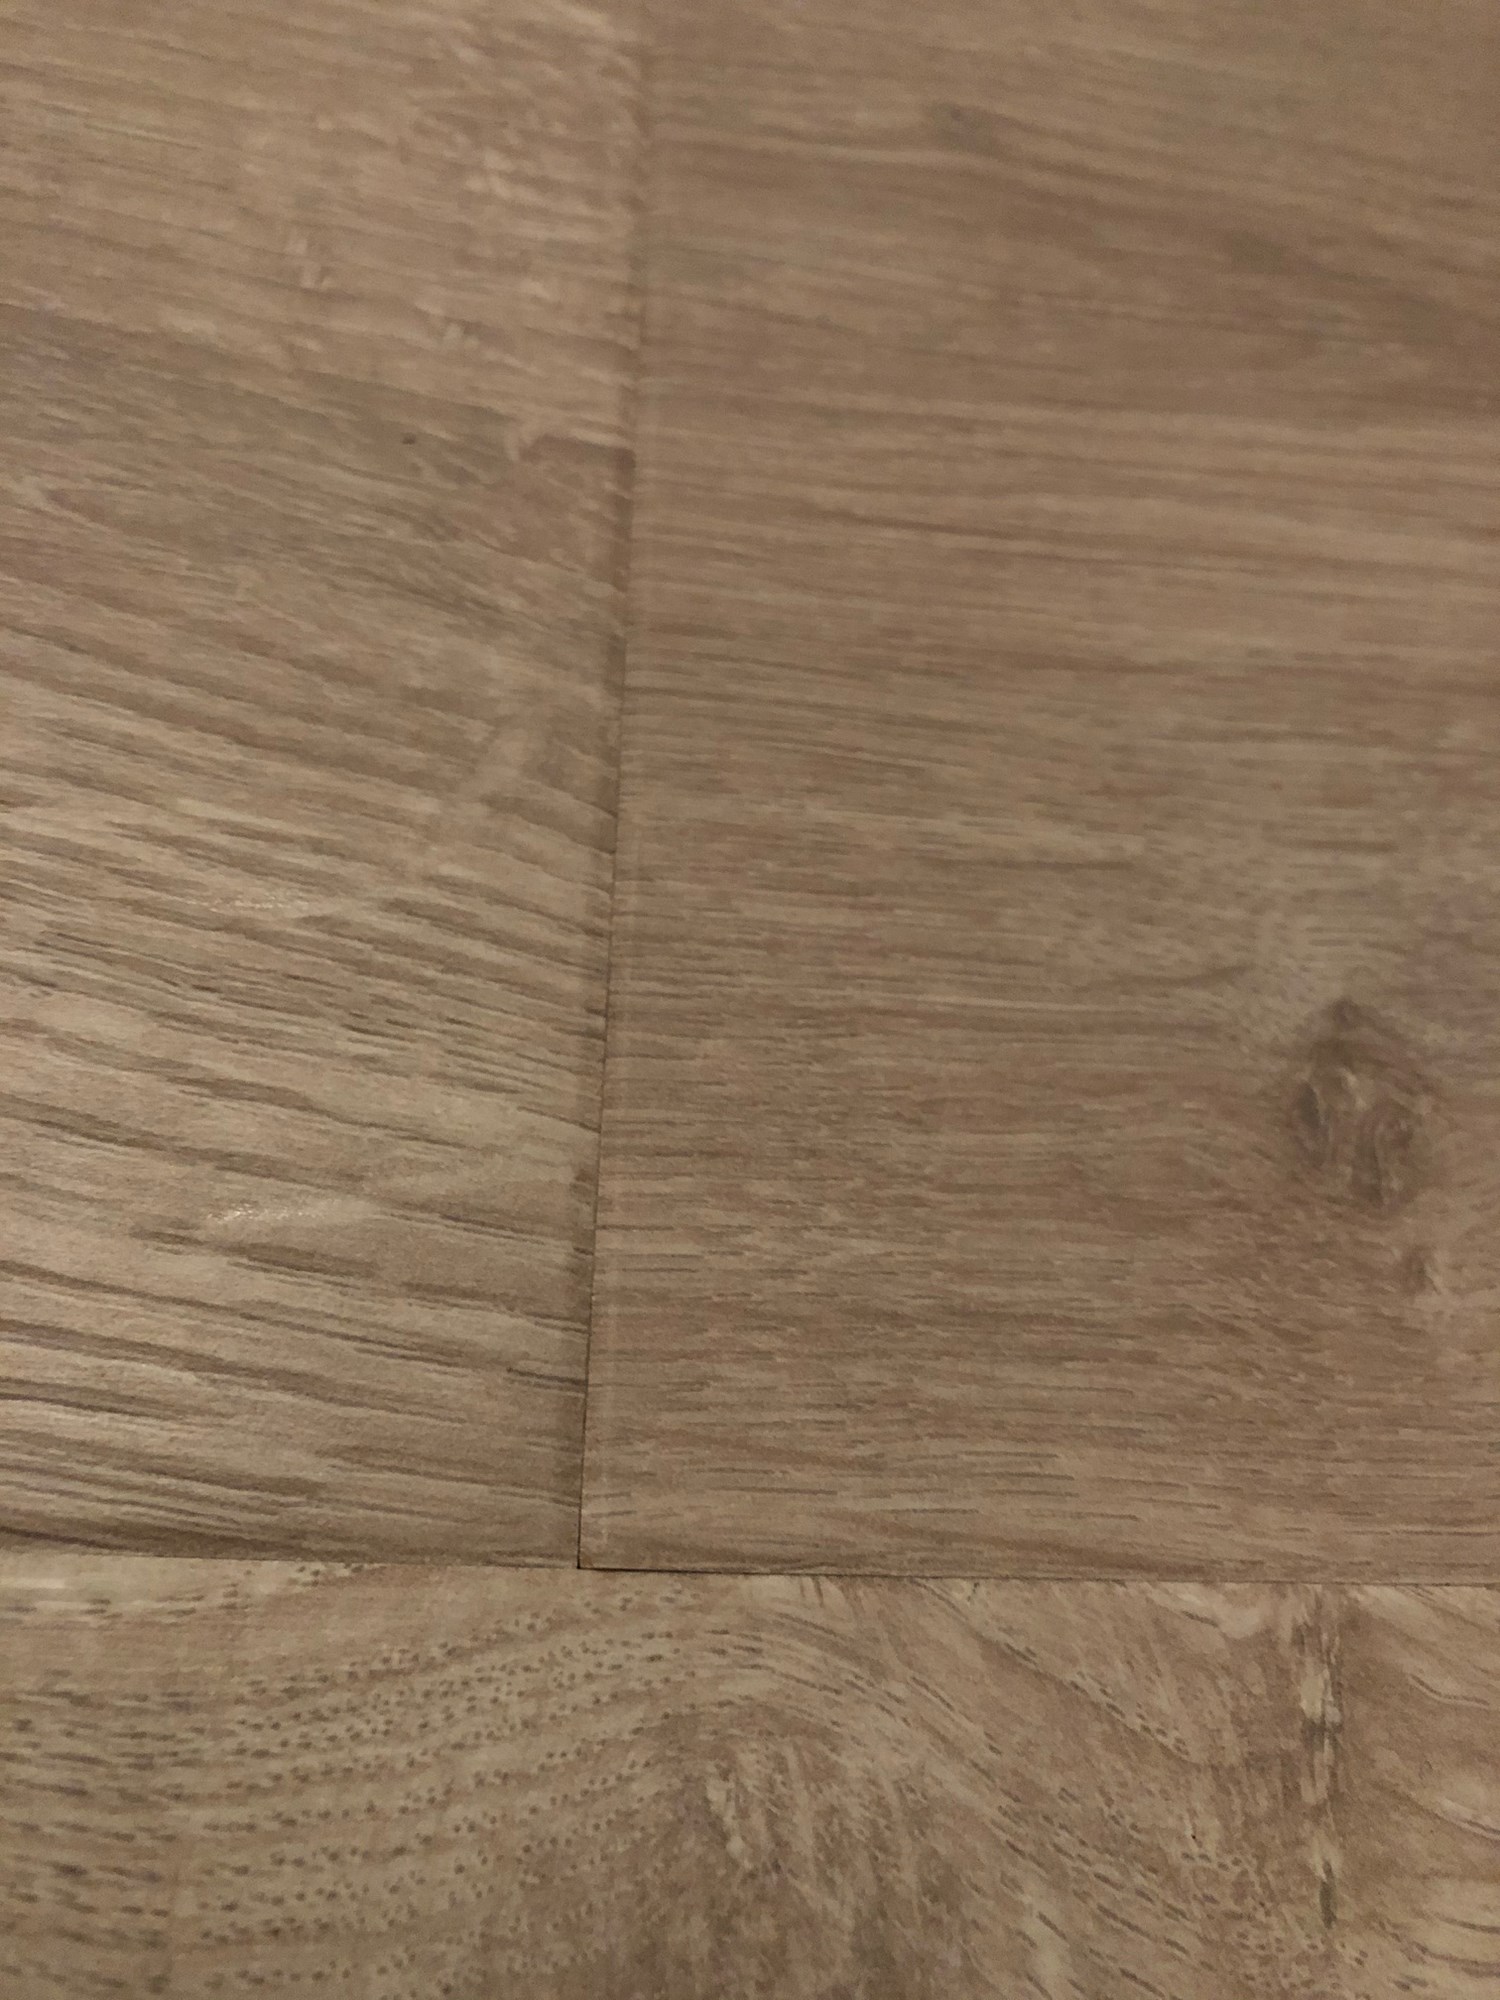 Skjevhet i gulv gir utslag under laminat legging - Hva kan gjøres? - IMG_2254.jpg - Logodesignerne